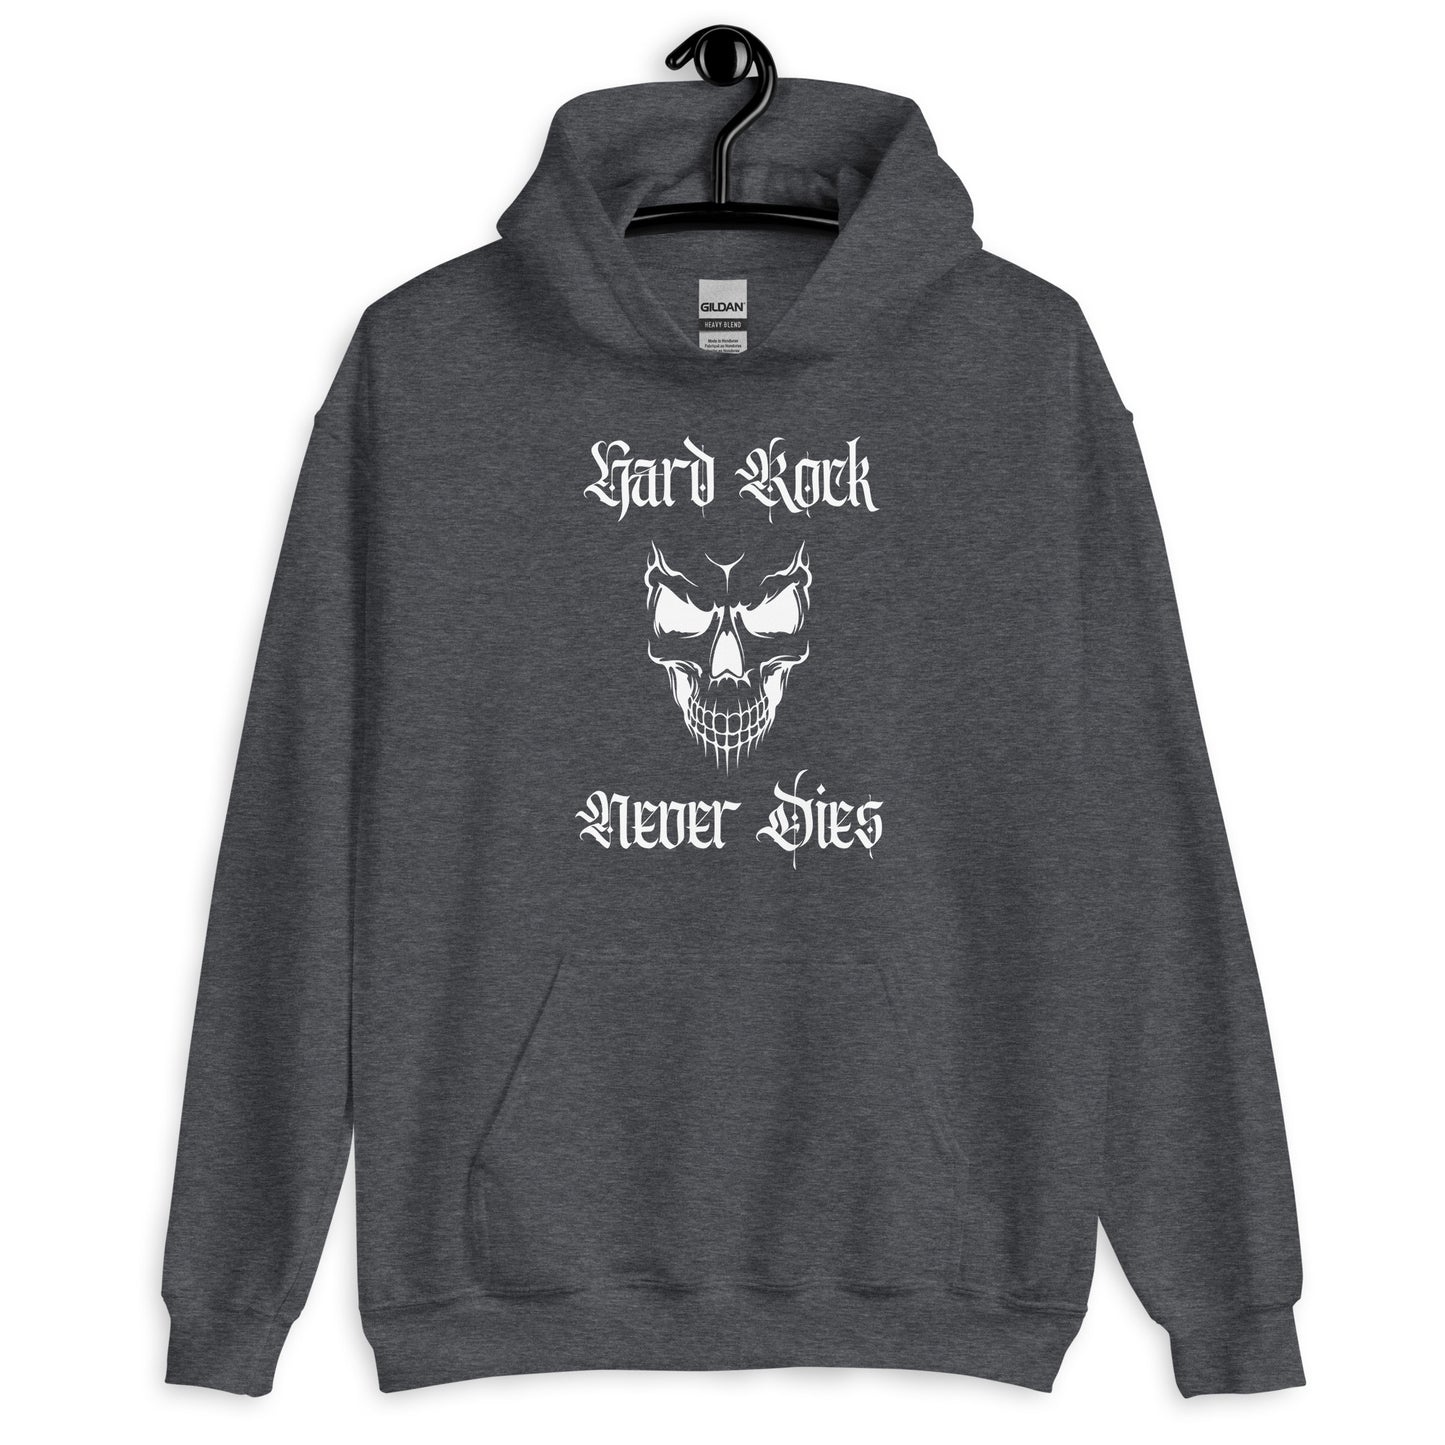 Hard Rock Never Dies Hoodie dark gray